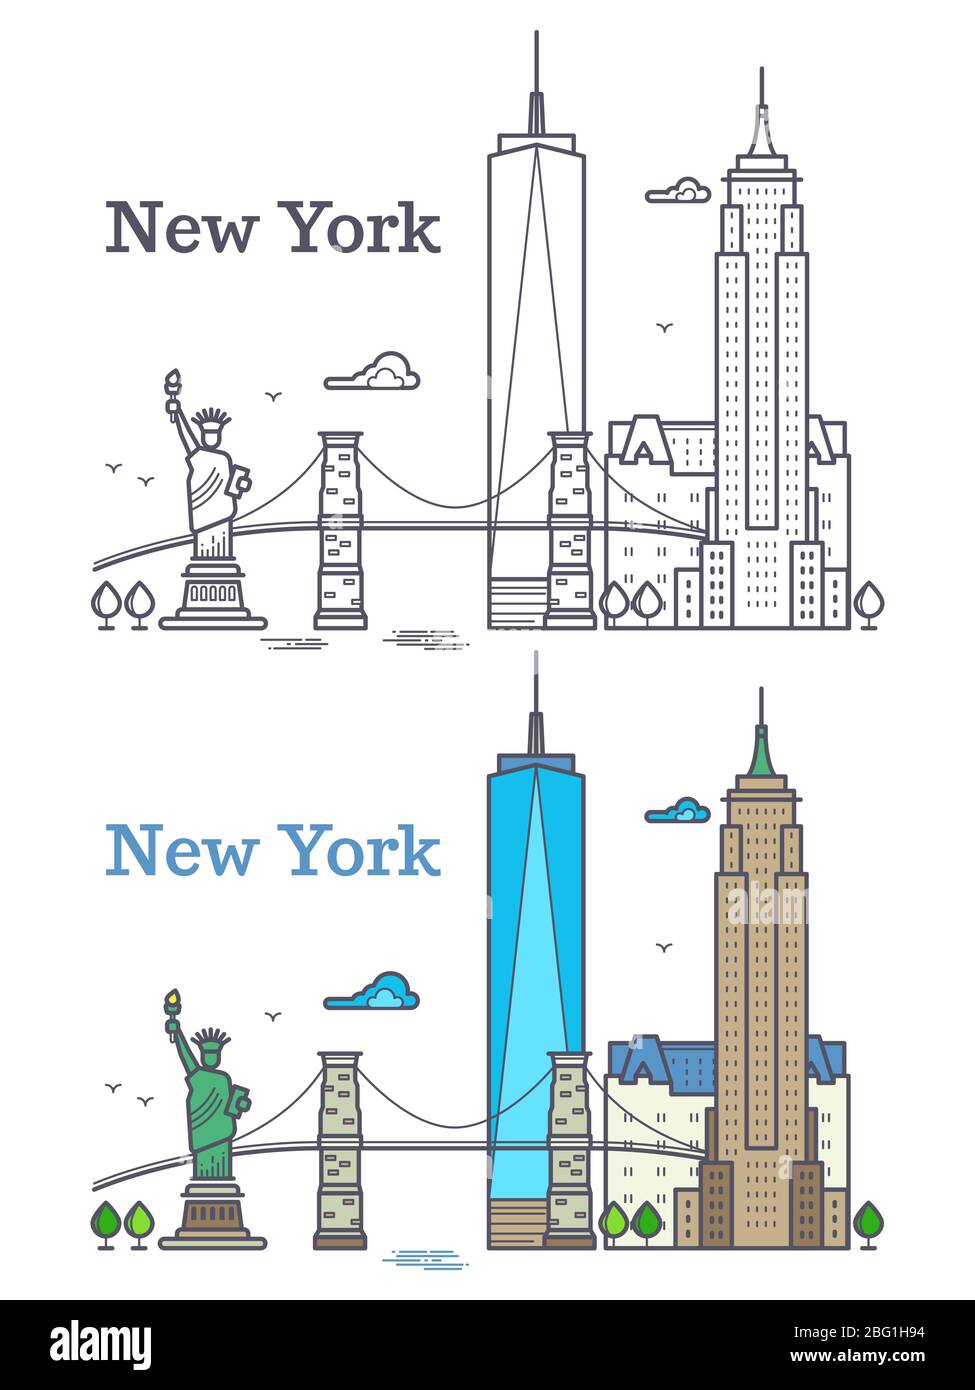 New York City umreißt Skyline, nyc Linie Silhouette, usa Touristen und Reisekonzept. NYC Gebäude Architektur Illustration Stock Vektor